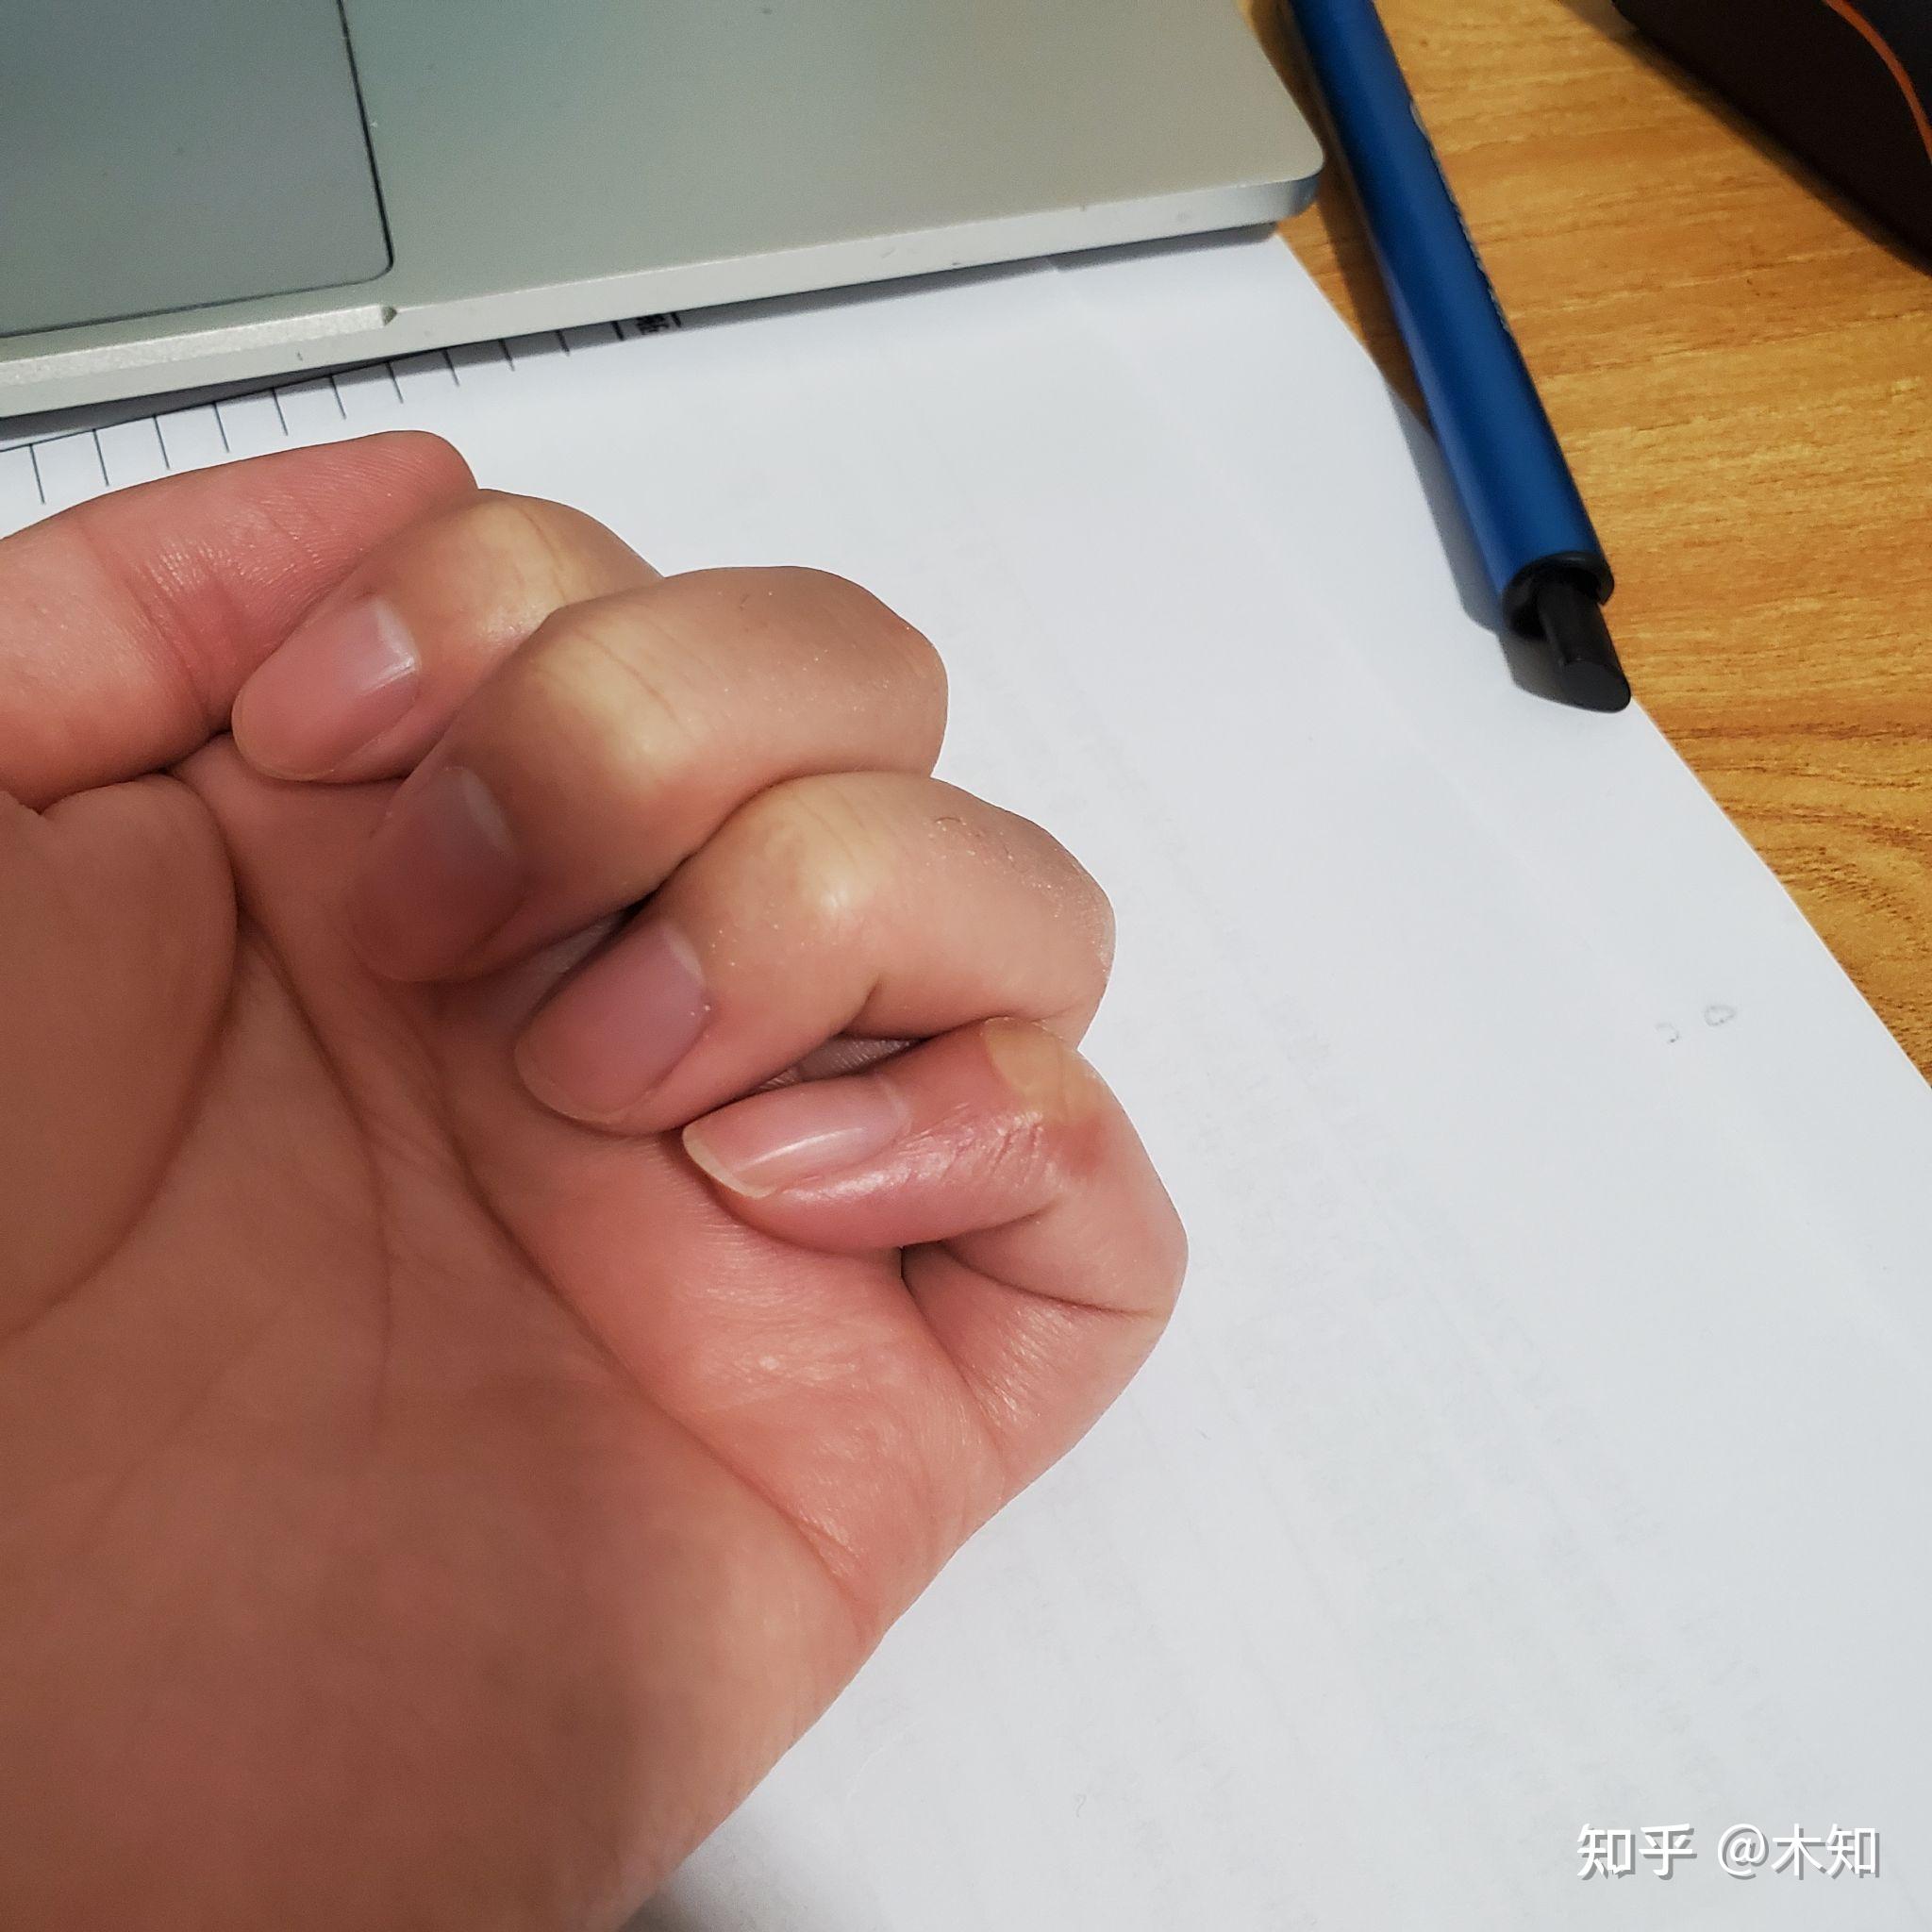 手指弯曲是什么原因造成的？ - 知乎